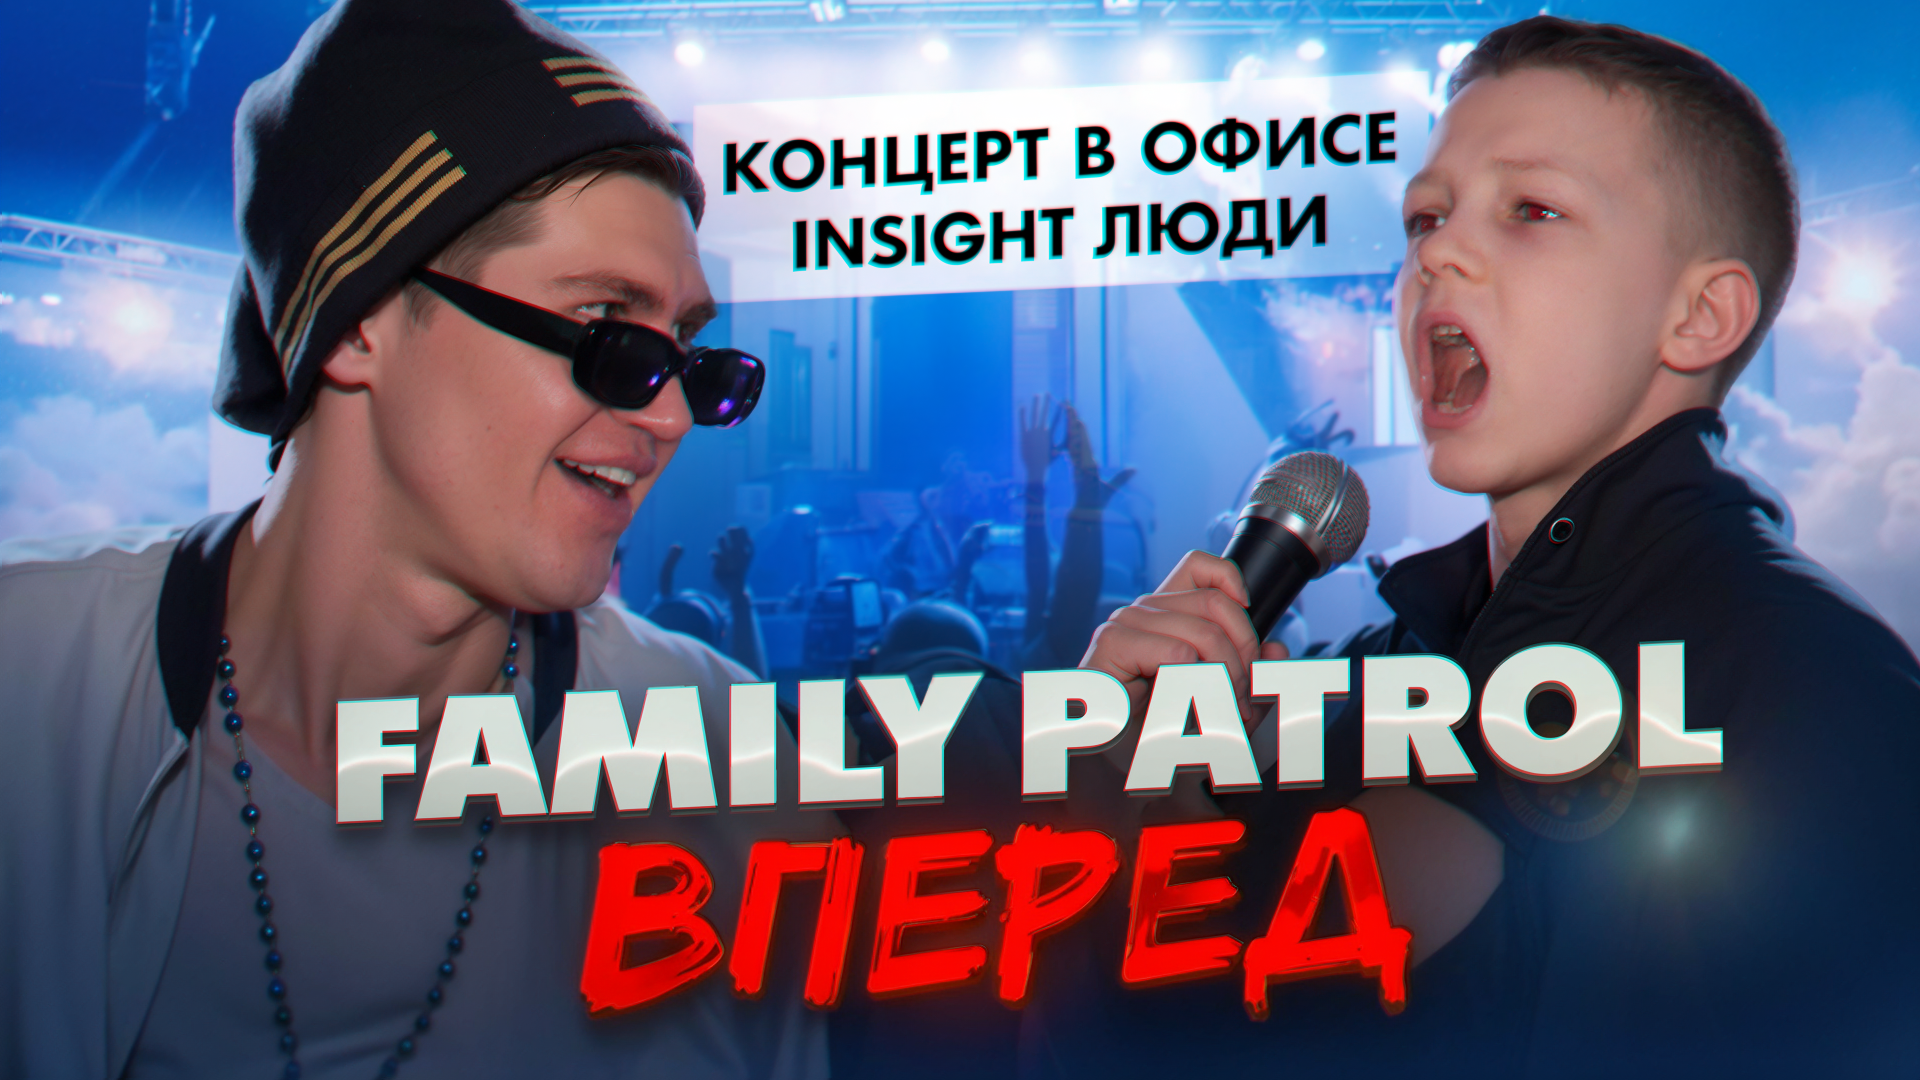 Елисей,перпый концерт с авторской песней FAMILY PATROL ВПЕРЕД